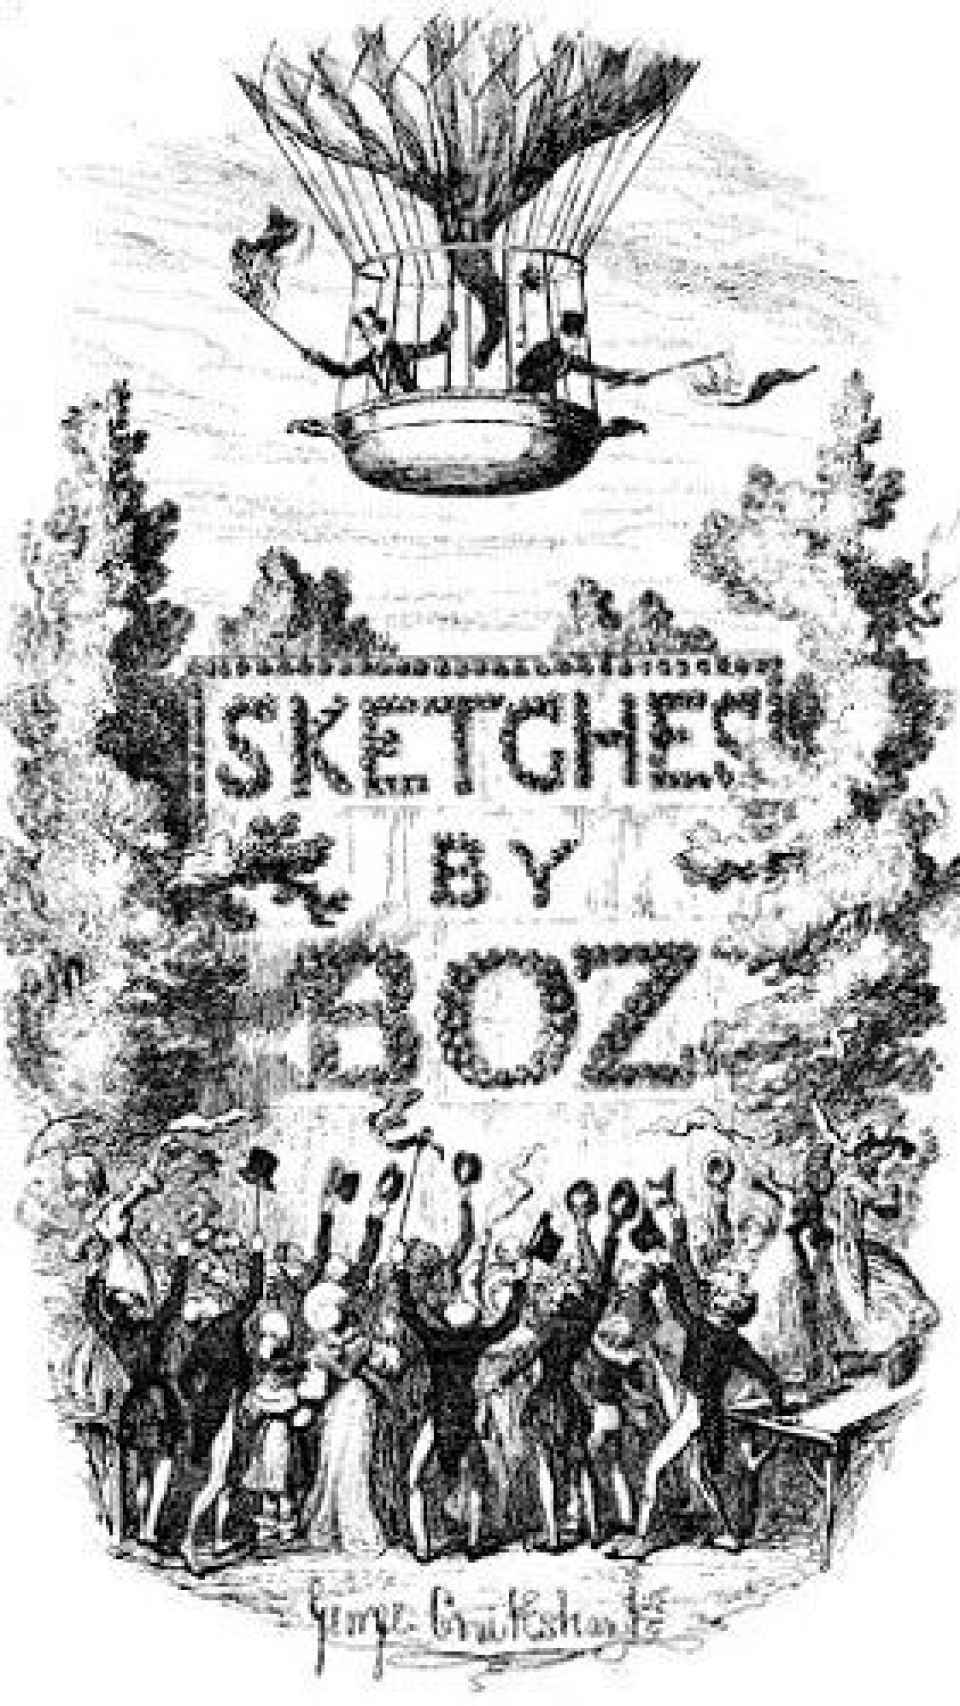 Ilustración de los 'Sketches', escritos por un joven Dickens con el seudónimo Boz